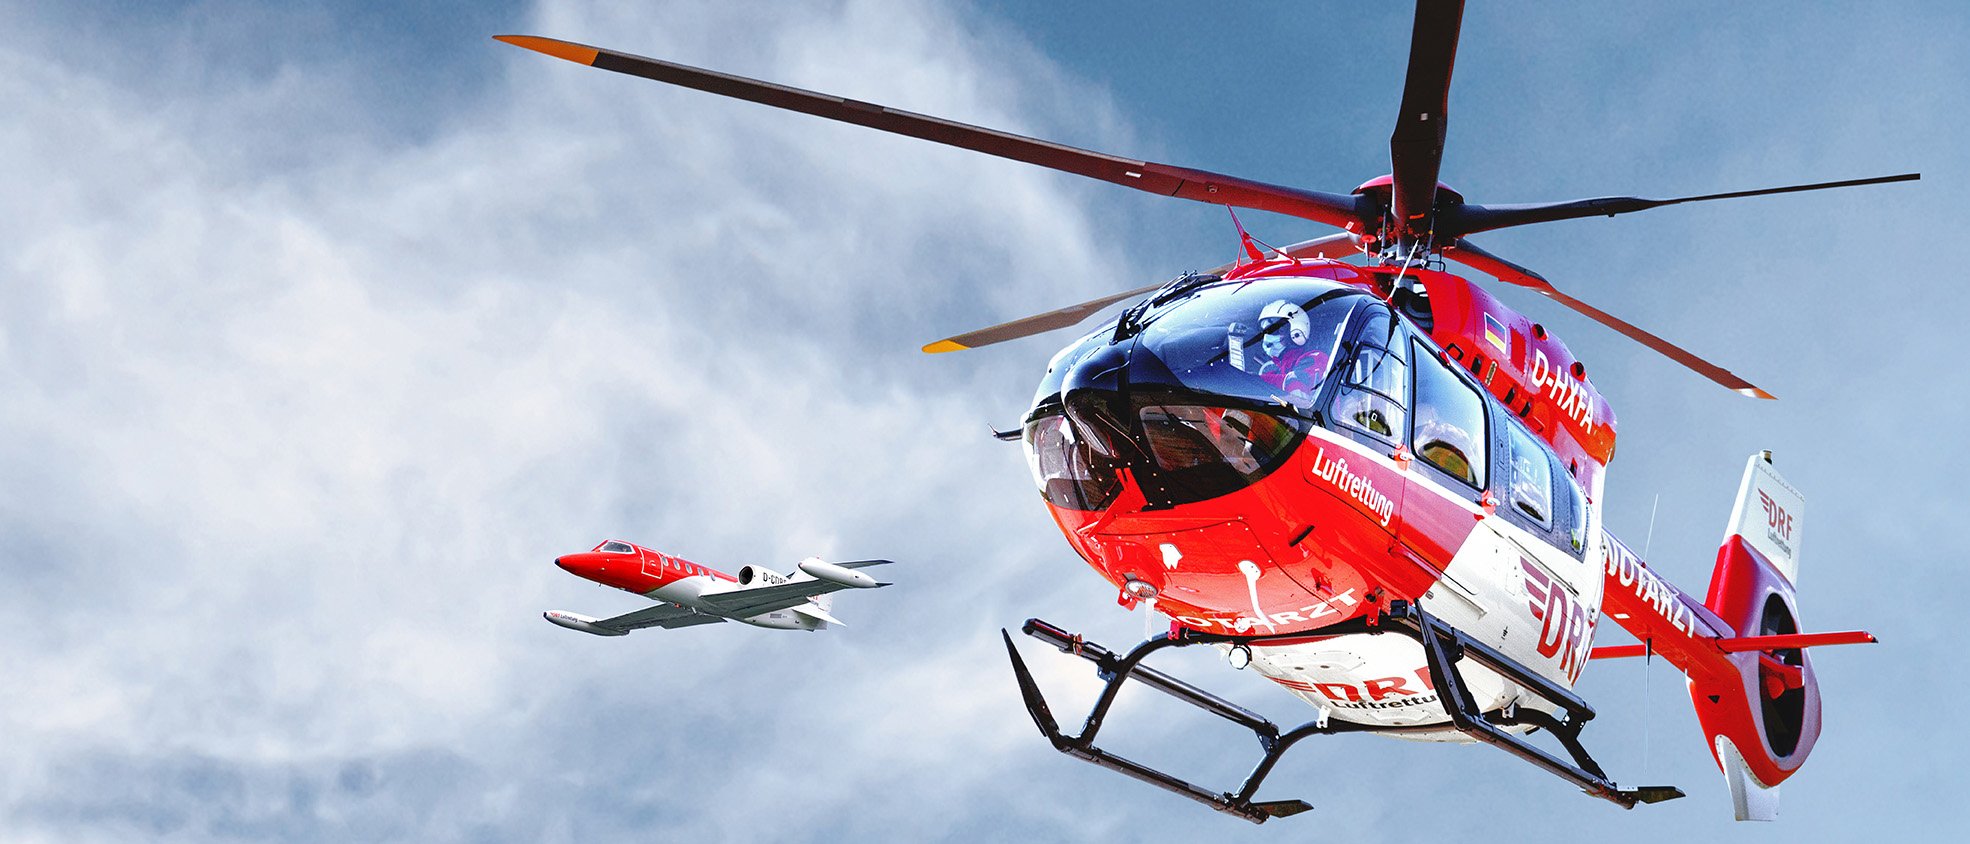 Hubschrauber und Learjet der DRF Luftrettung vor blauem Himmel